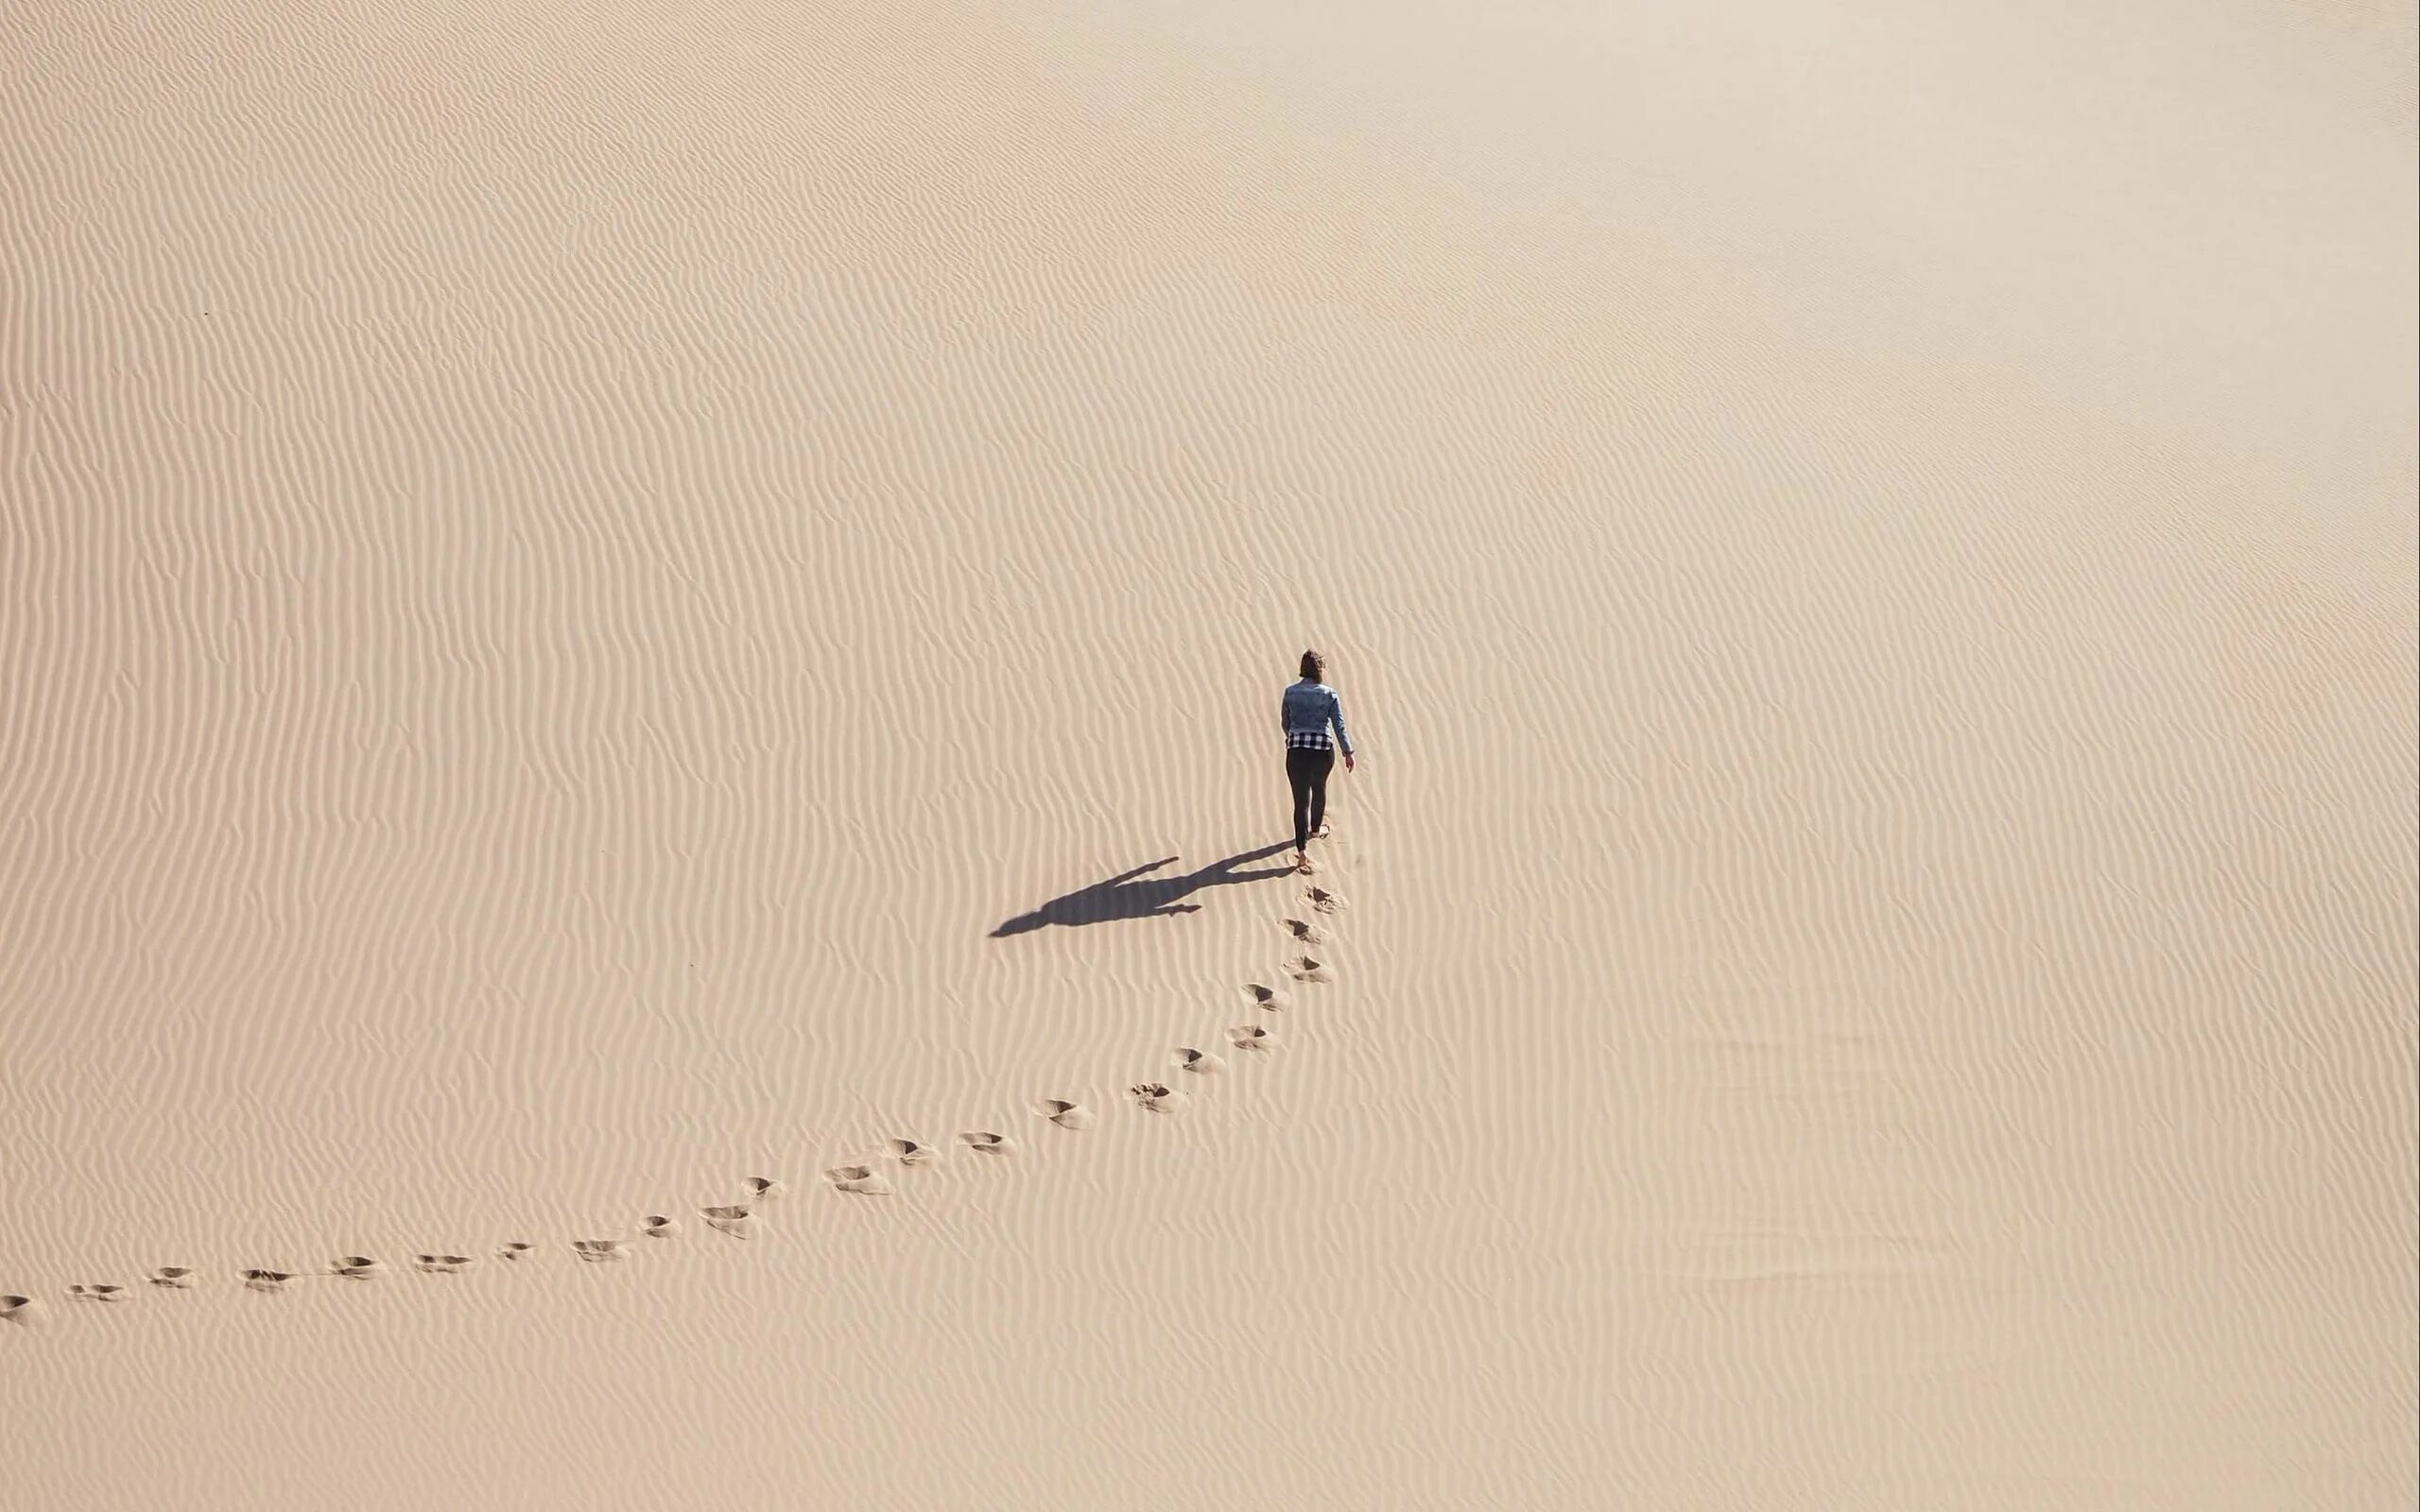 Следы уходящих людей. Следы в пустыне. Человек в пустыне. Человек идет по пустыне. Следы на песке в пустыне.